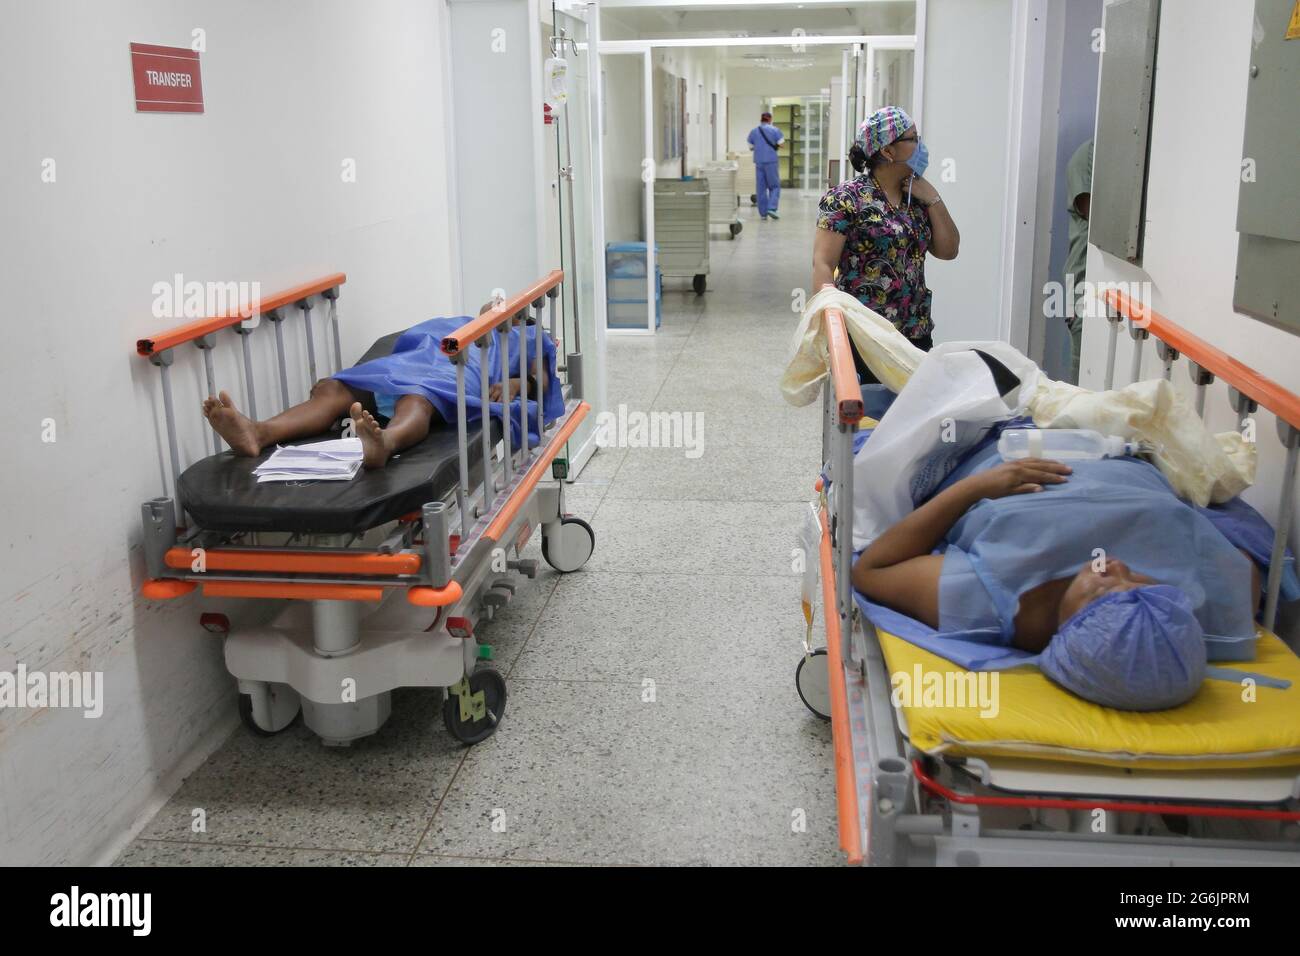 Maracaibo-Venezuela-19-06-2015- maternità Castillo Plaza in donne incinte aspettano il loro turno per il parto di un neonato in ospedale. Foto: José Bula Foto Stock